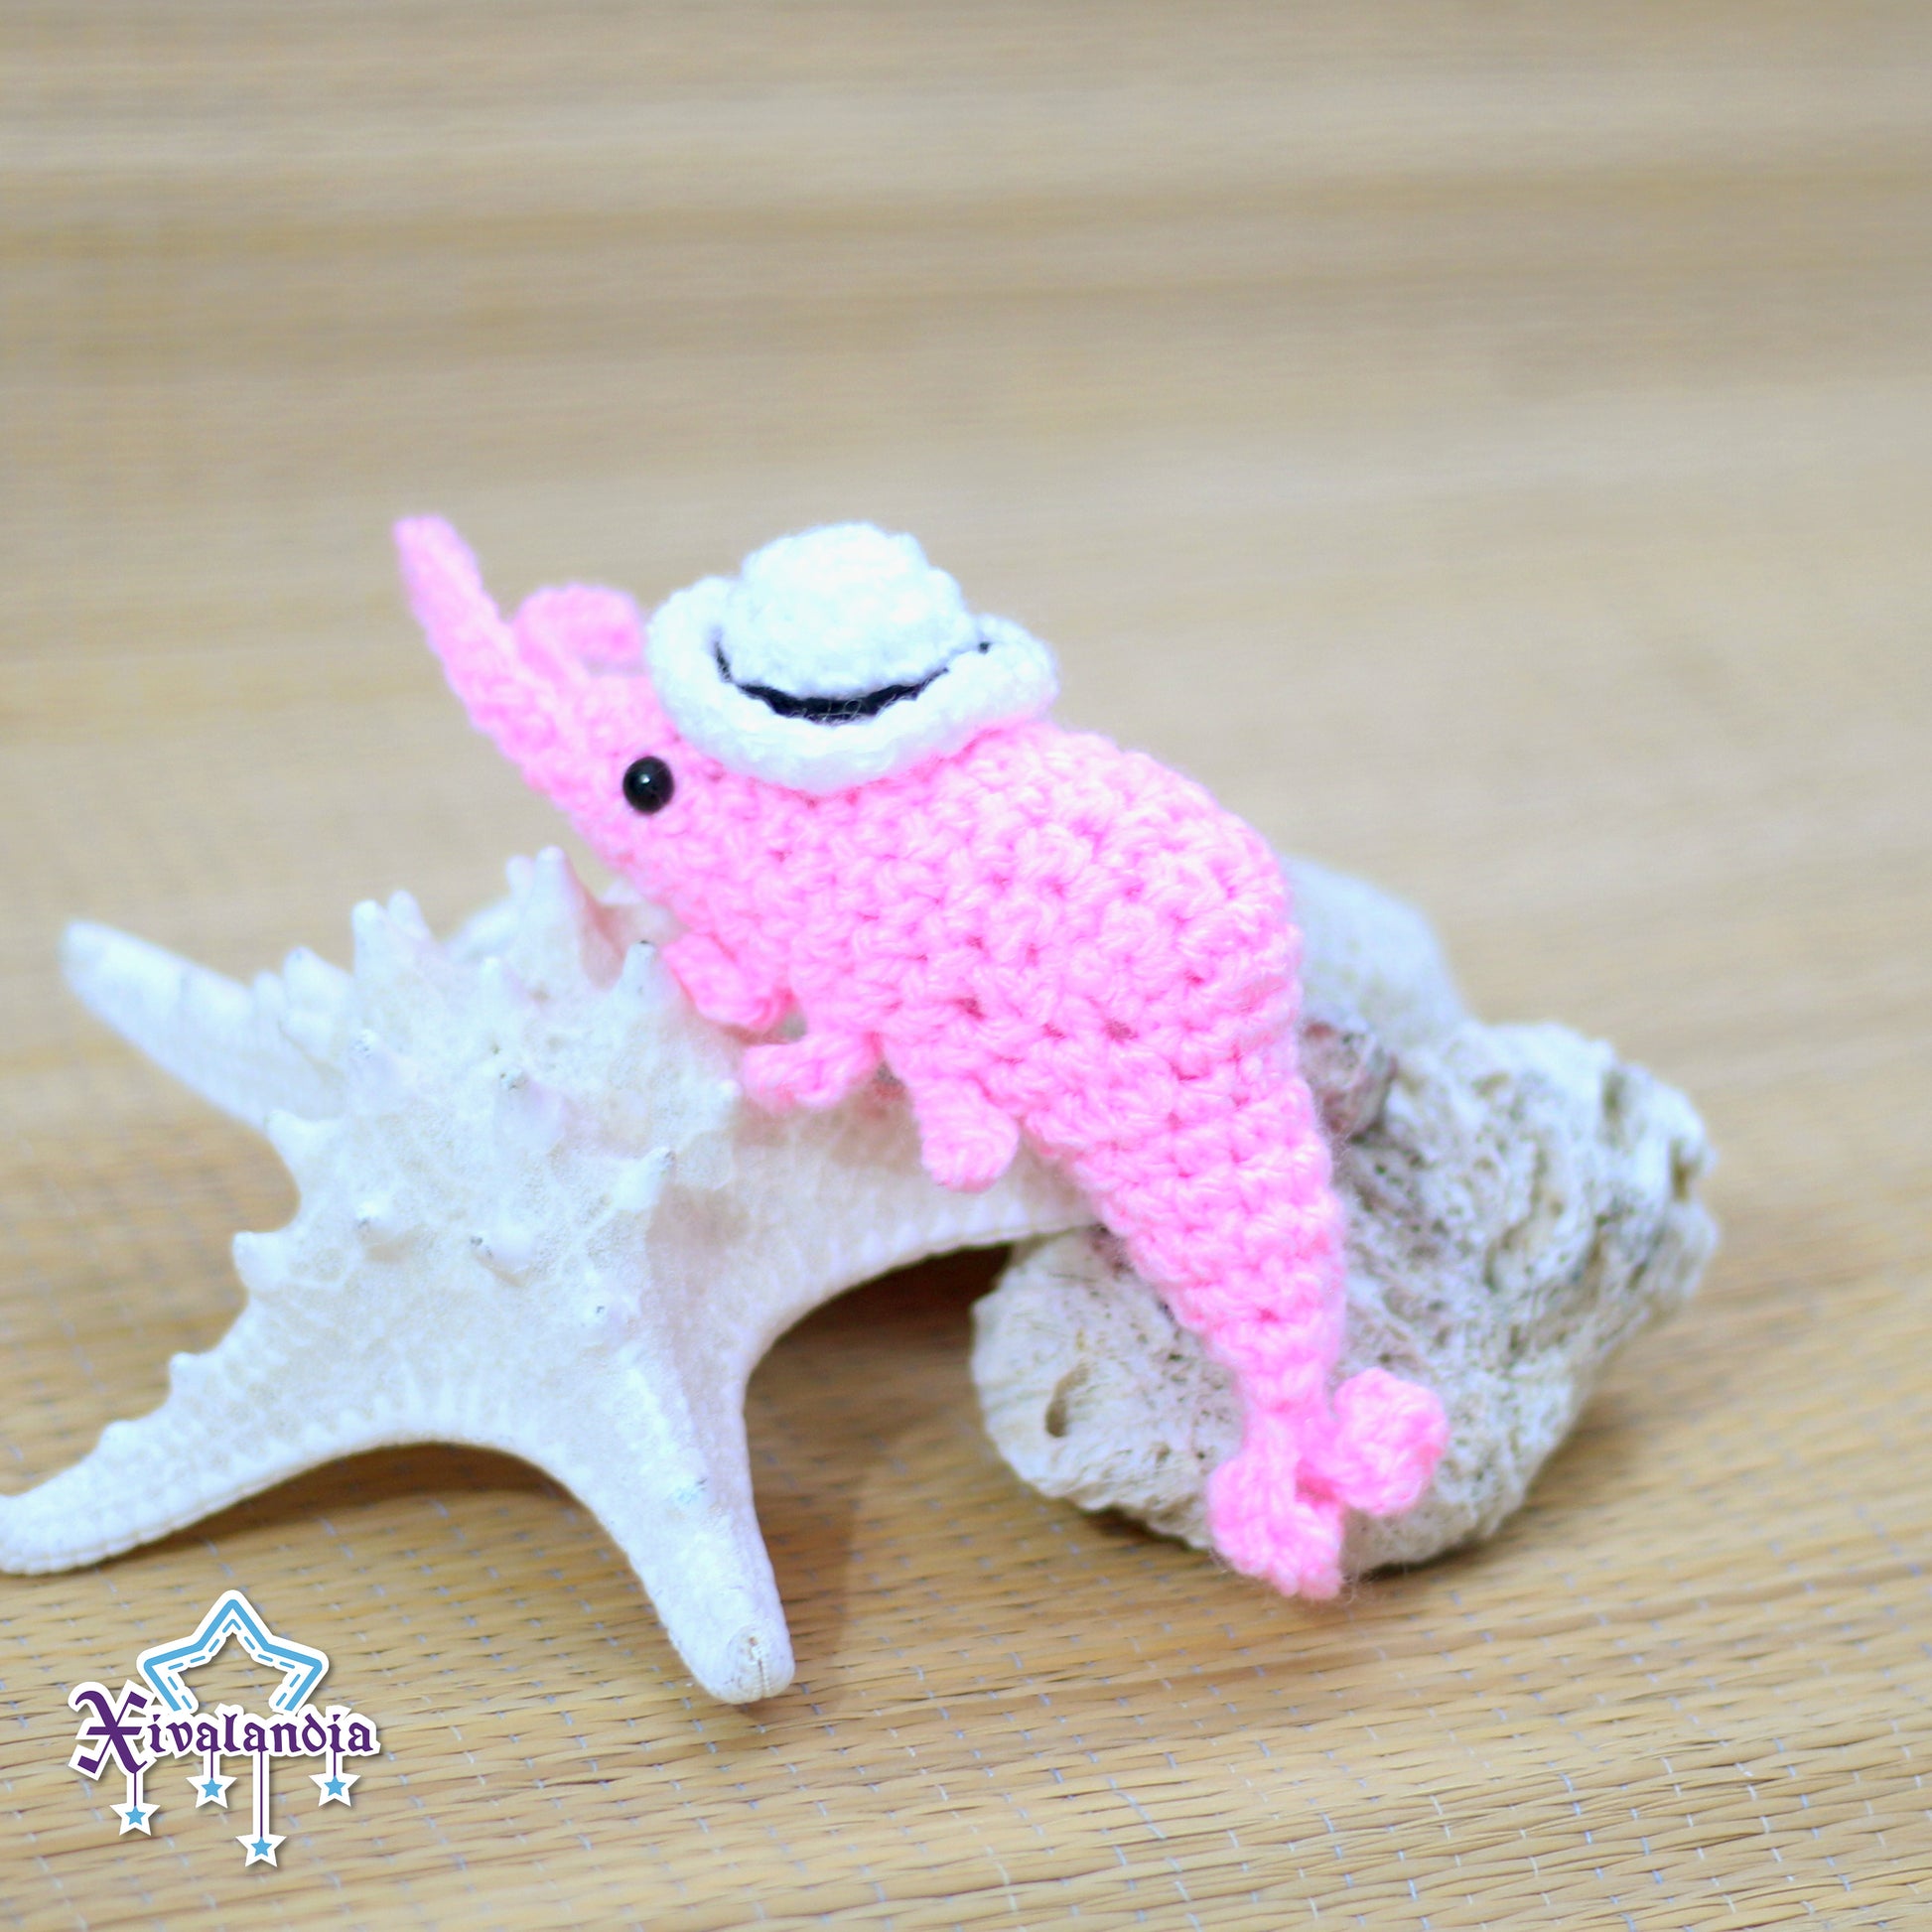 mini shrimp from Veracruz (jarocho) crochet plush amigurumi